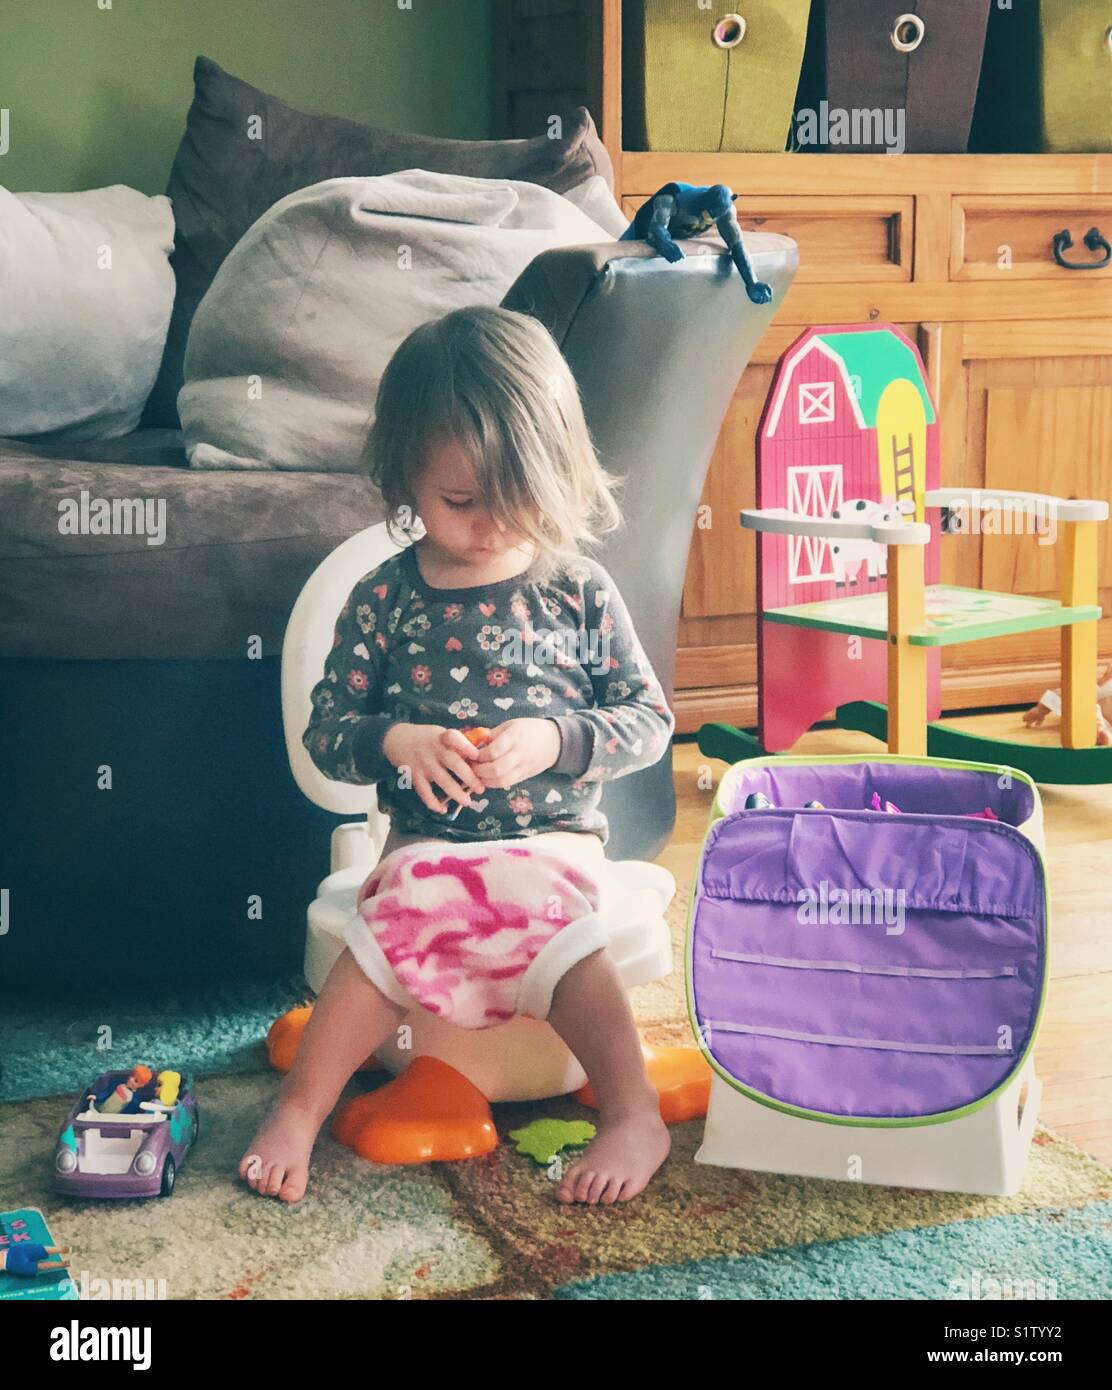 Authentische, ehrliche lifestyle Bild von Kleinkind Mädchen sitzen auf potty Chair mit Spielzeug in Familienzimmer während wc Training Stockfoto